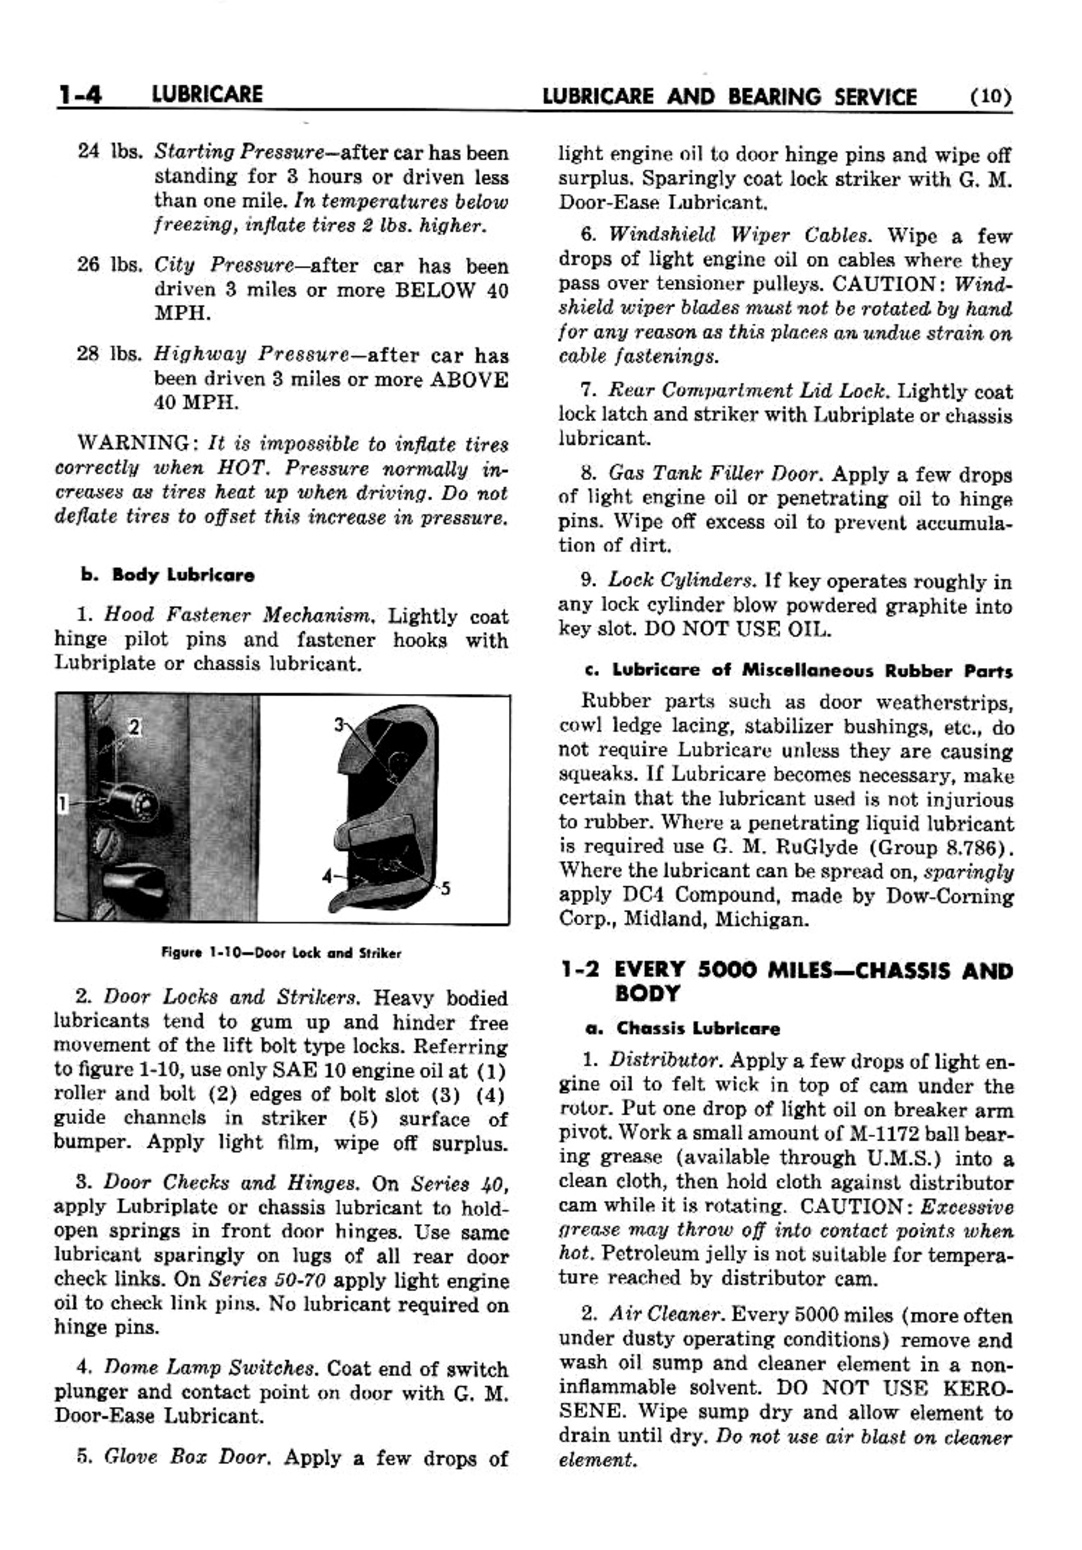 n_02 1952 Buick Shop Manual - Lubricare-004-004.jpg